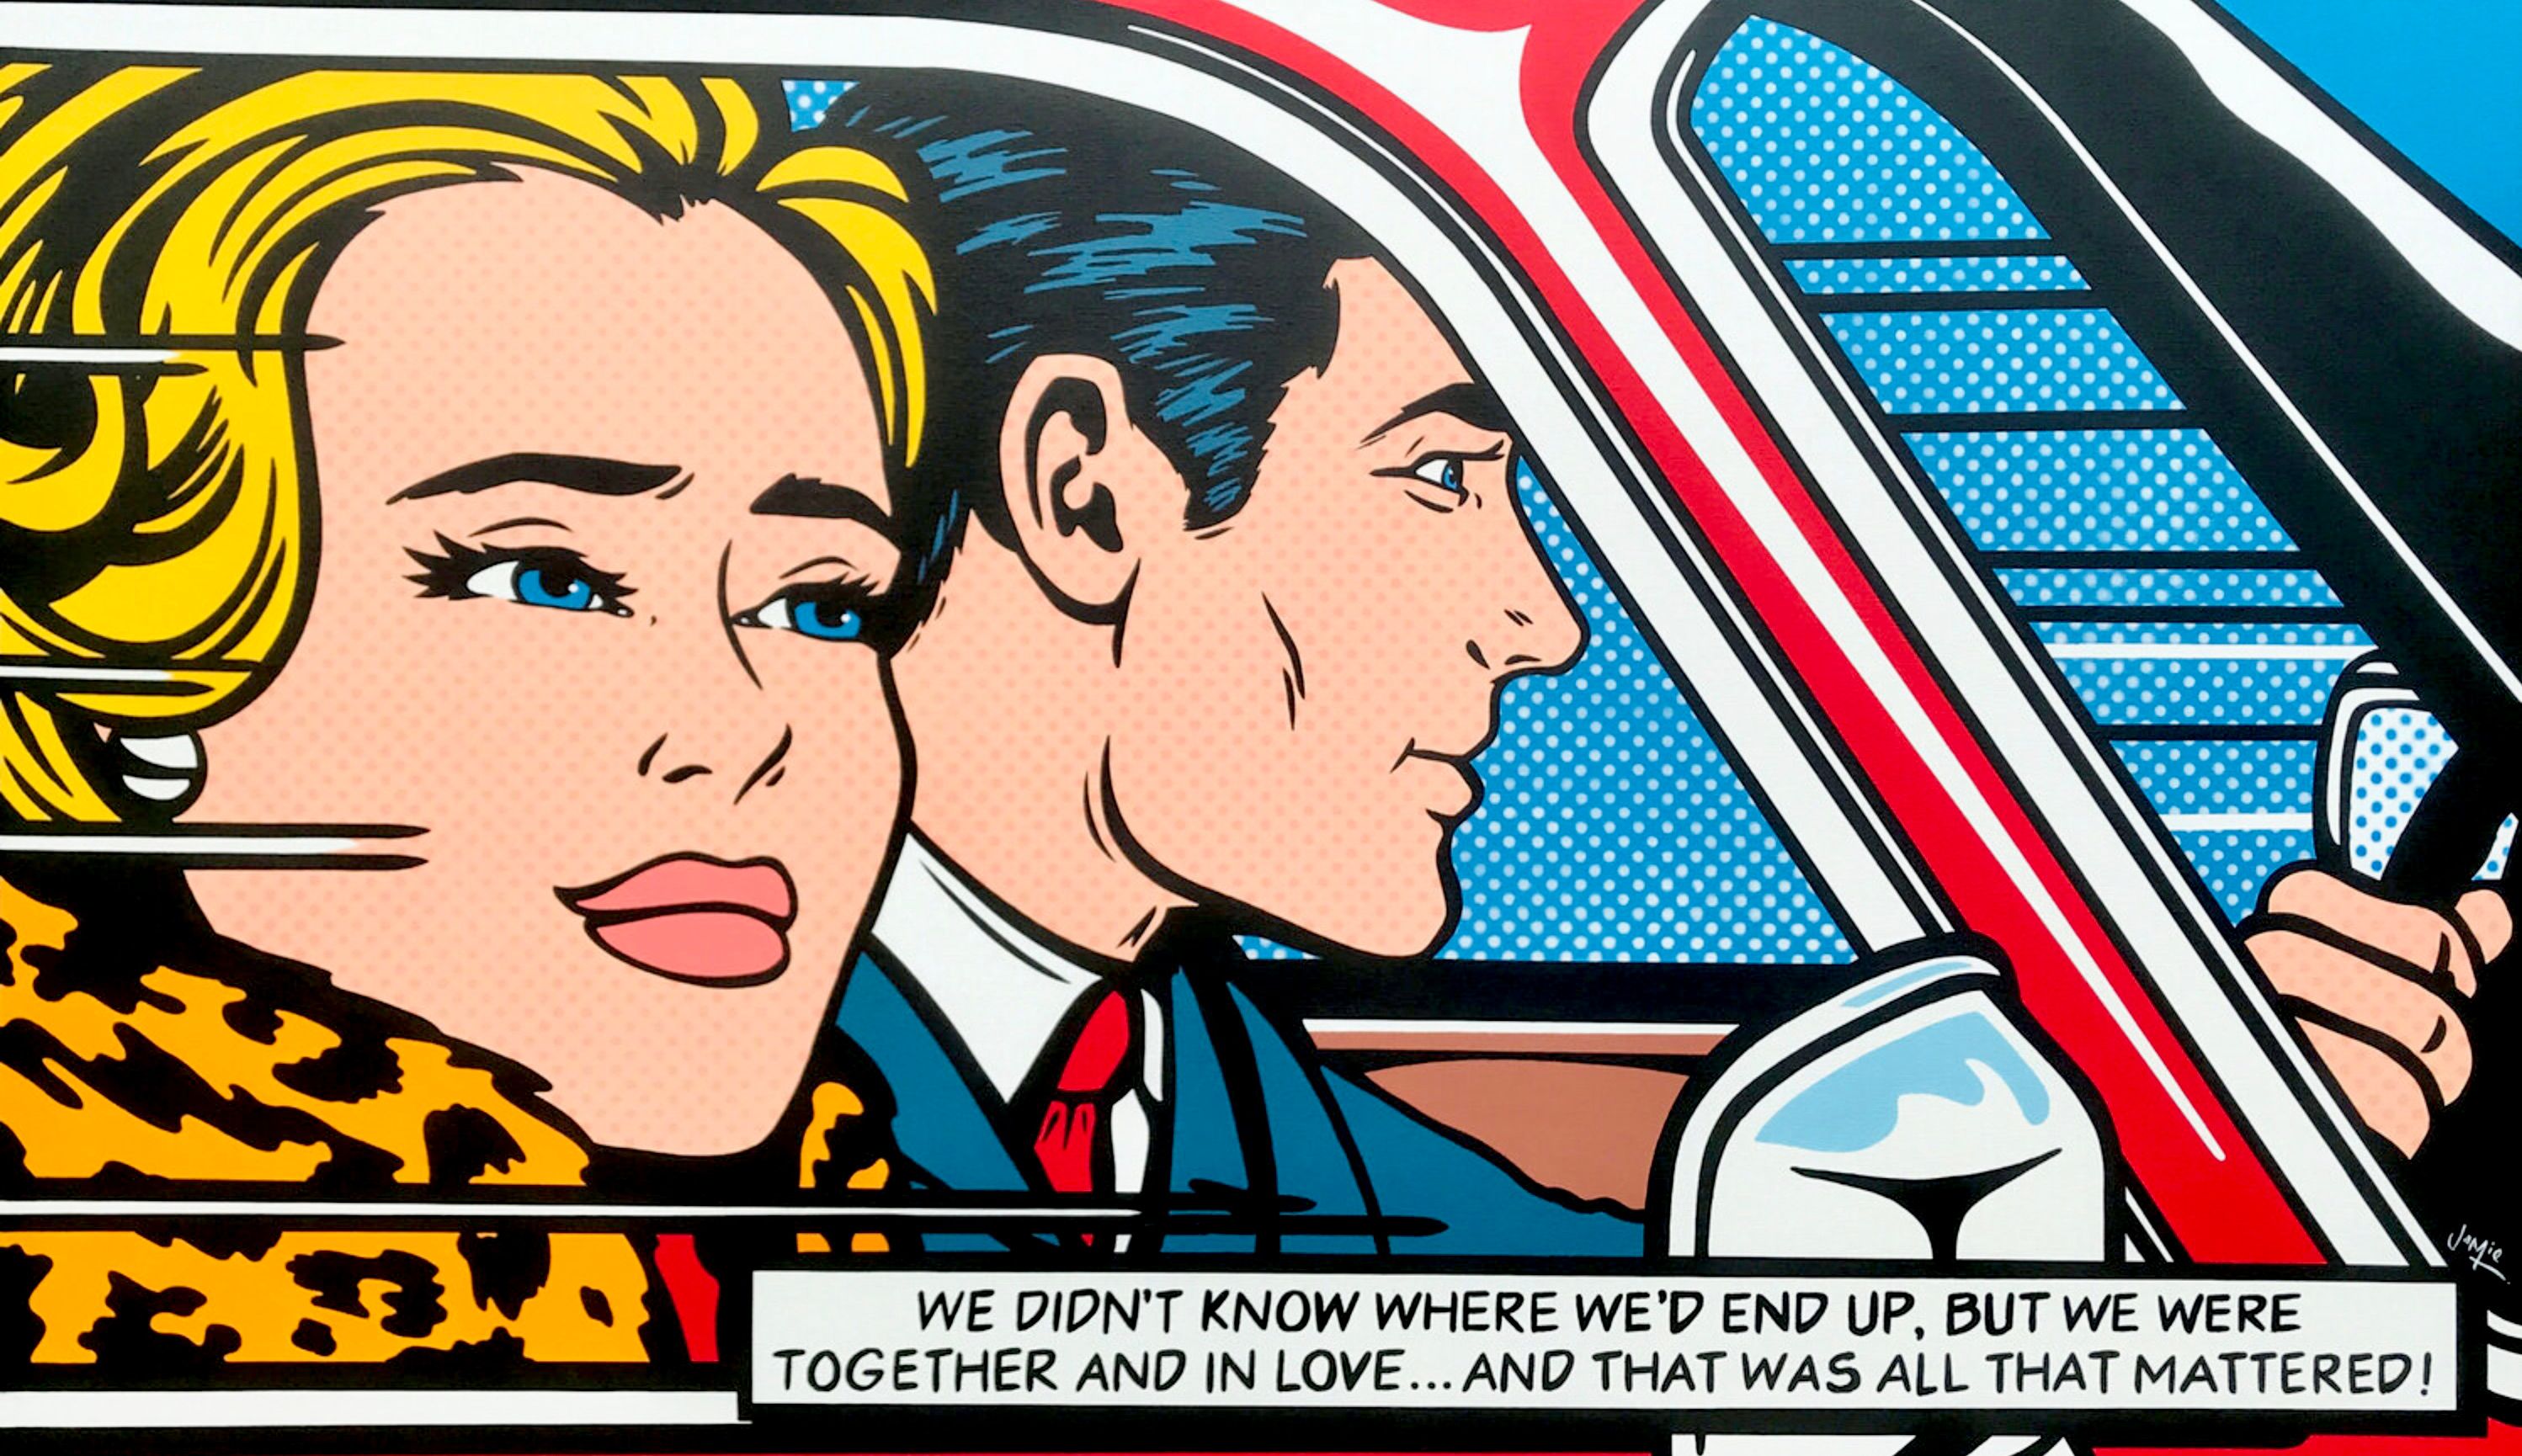 Peinture pop art de Jamie Lee "The Adventure" de style bande dessinée avec un design original d'un jeune couple. Imaginez la scène suivante après la peinture "En voiture" de Lichtenstein. Peinture pop art originale de style bande dessinée d'un jeune couple amoureux qui part en voyage en voiture.